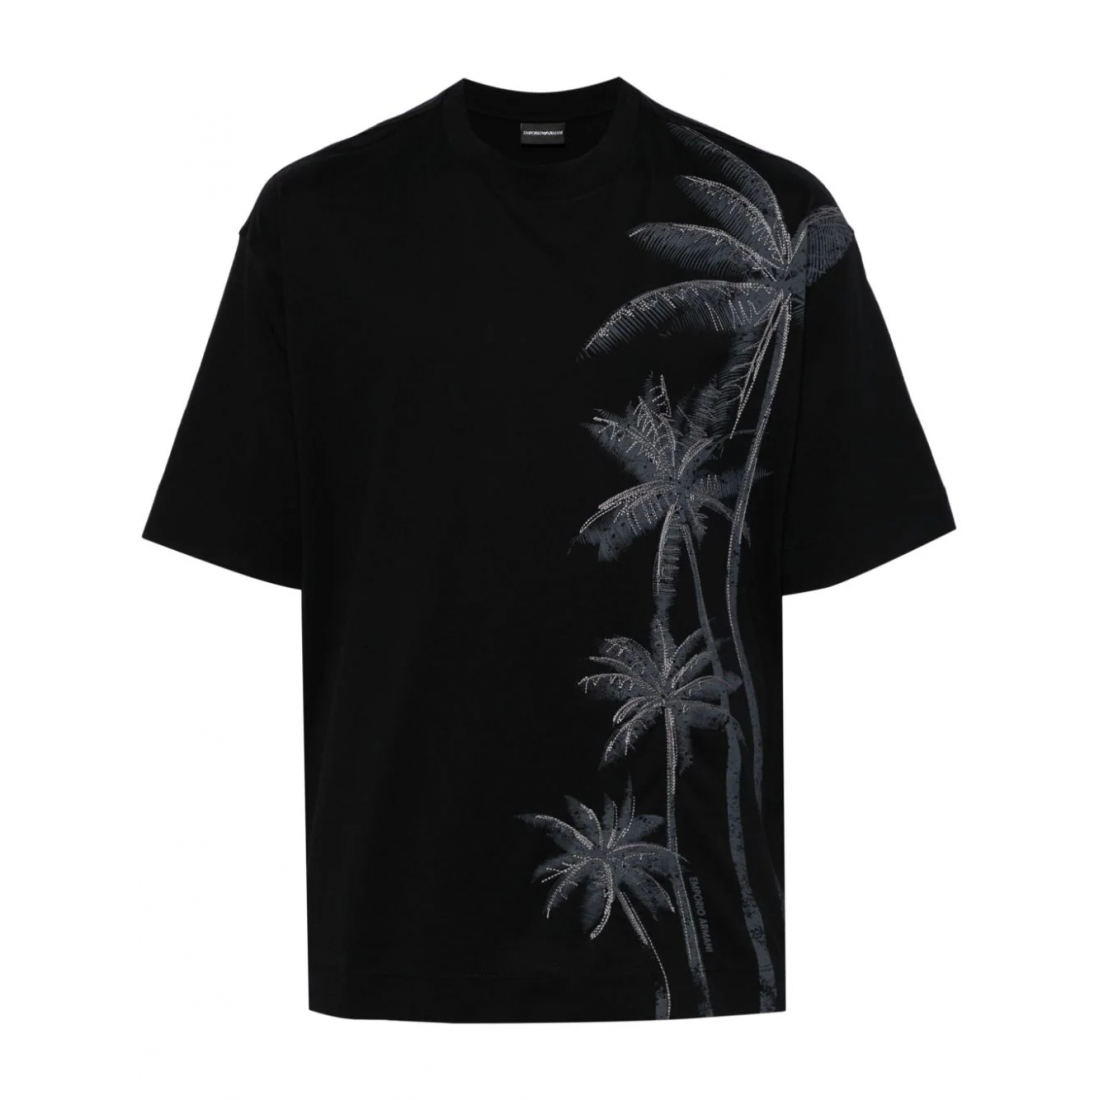 'Palm-Tree' T-Shirt für Herren